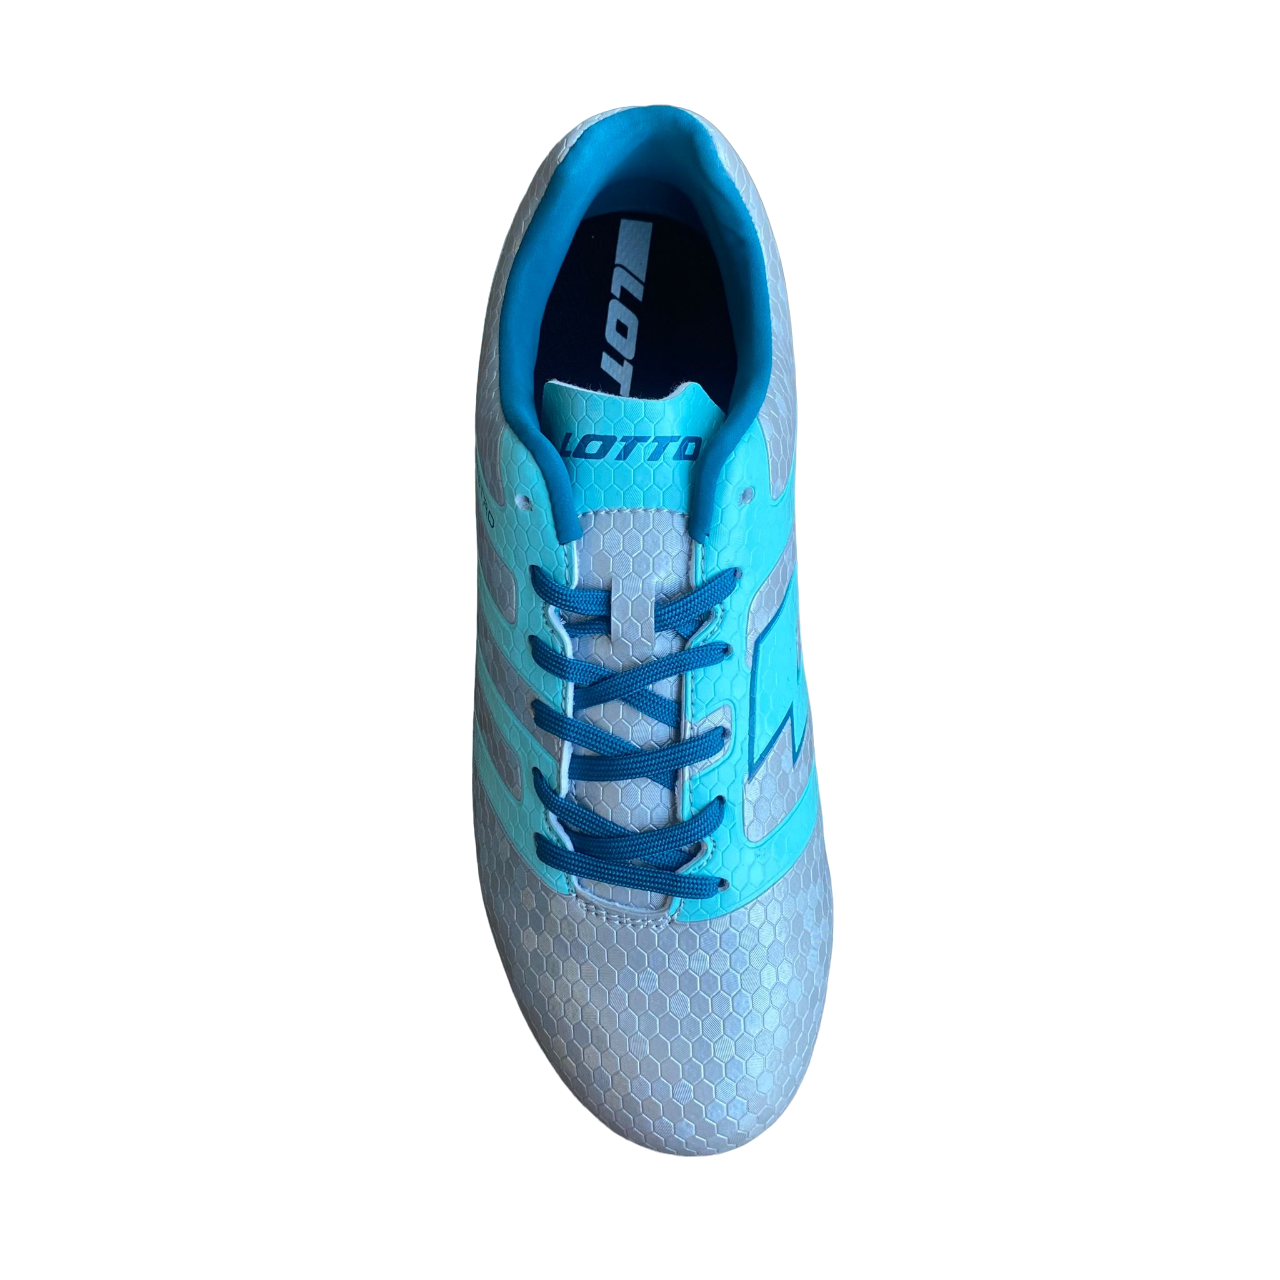 Lotto scarpa da calcio da ragazzo Maestro 700 IV AGM 217072 AU8 argento-blu